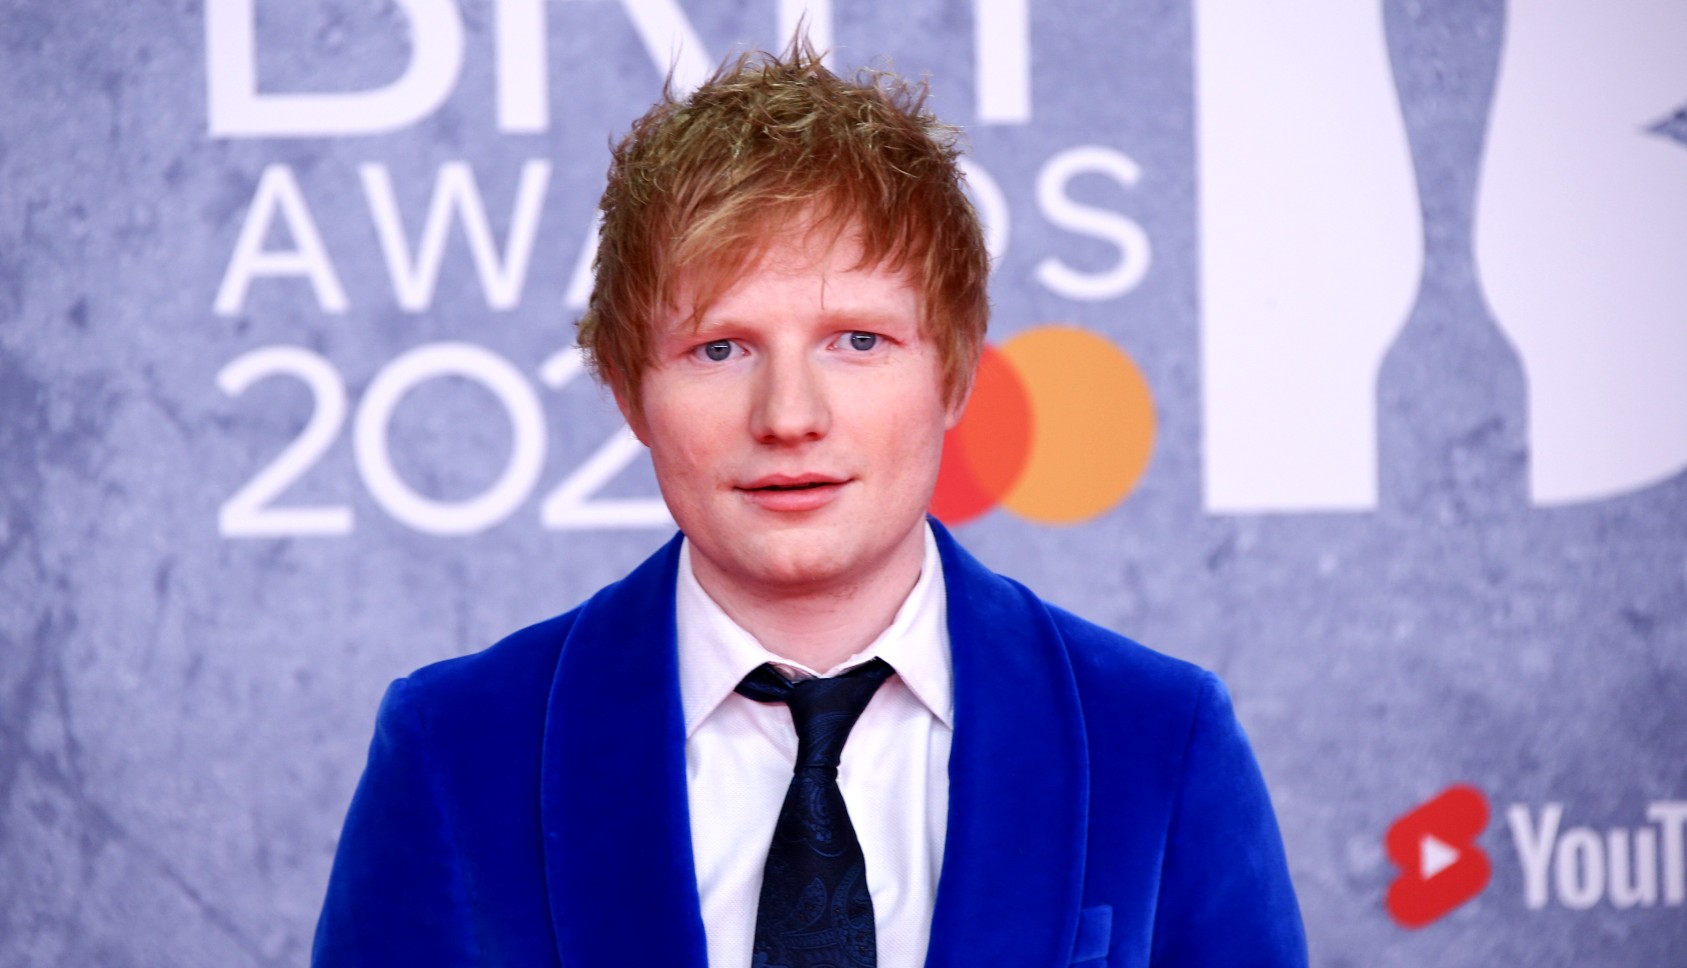 Σύμπτωση ή κλοπή; Αθώος ο Ed Sheeran στη δίκη για το “Shape of You”